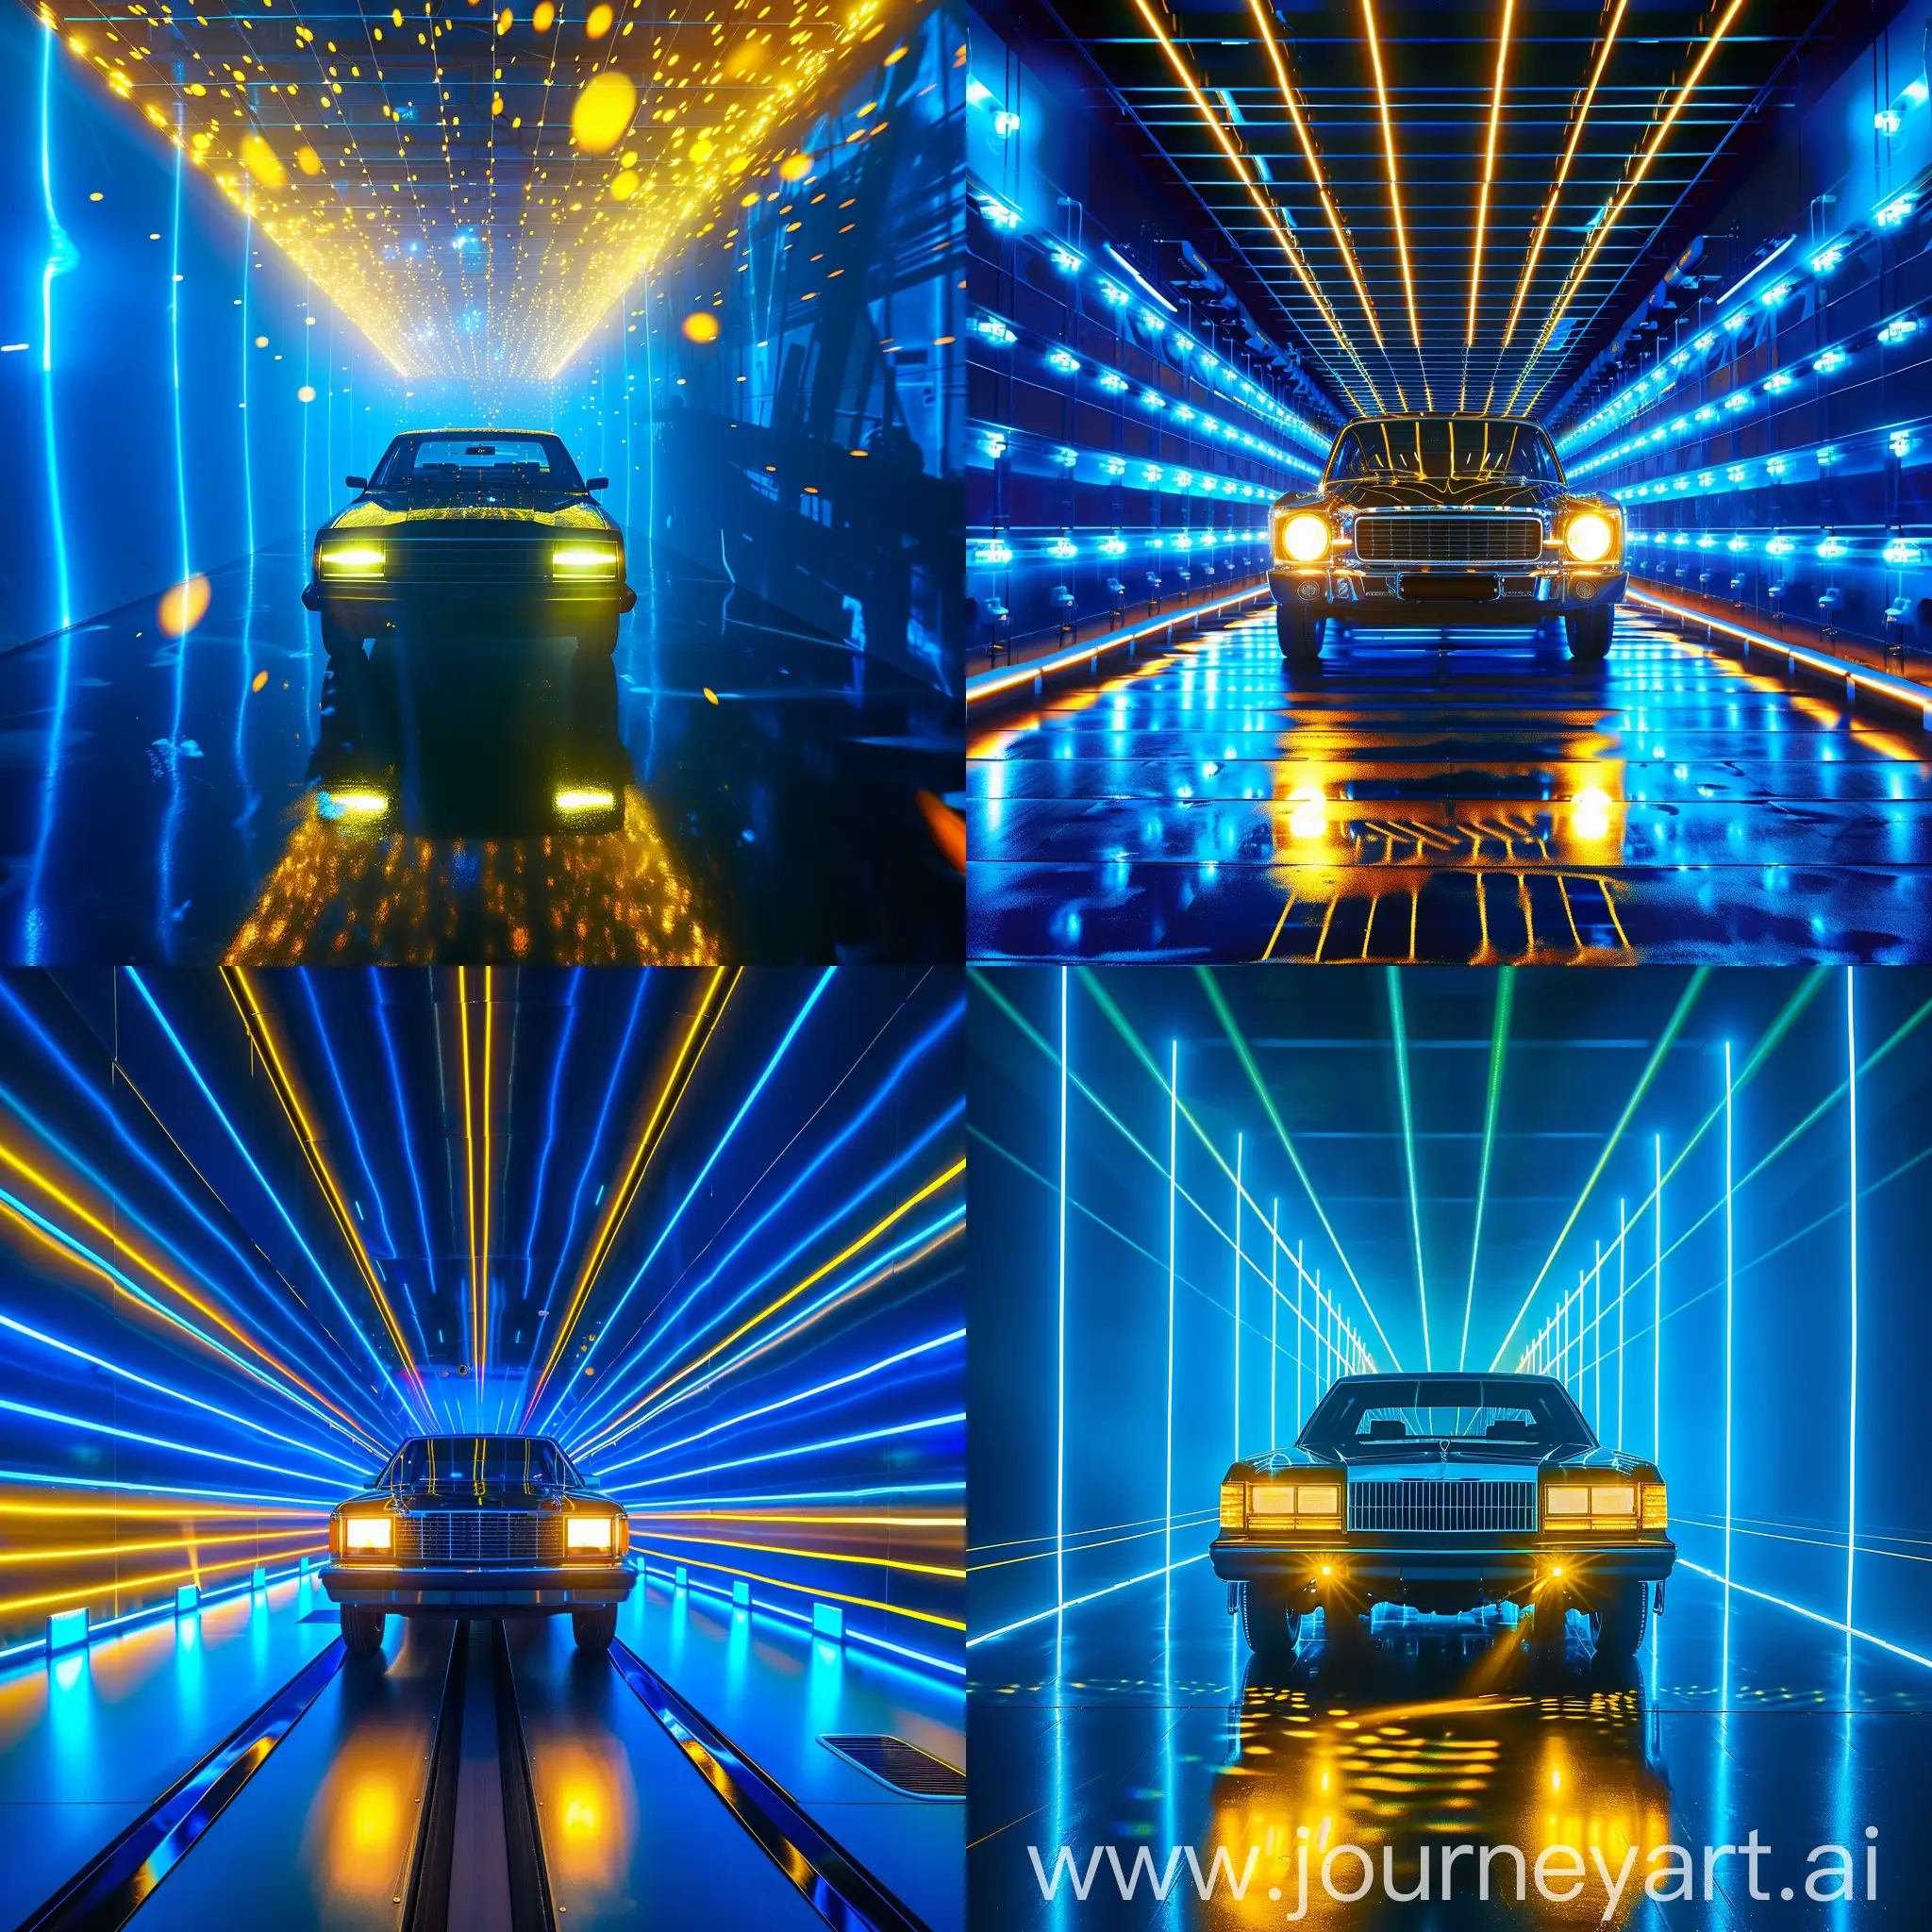 یک فضای نورانی با نور های آبی و زرد و وجود داشتن یک ماشین شاسی بلند که چرا های آن روشن است